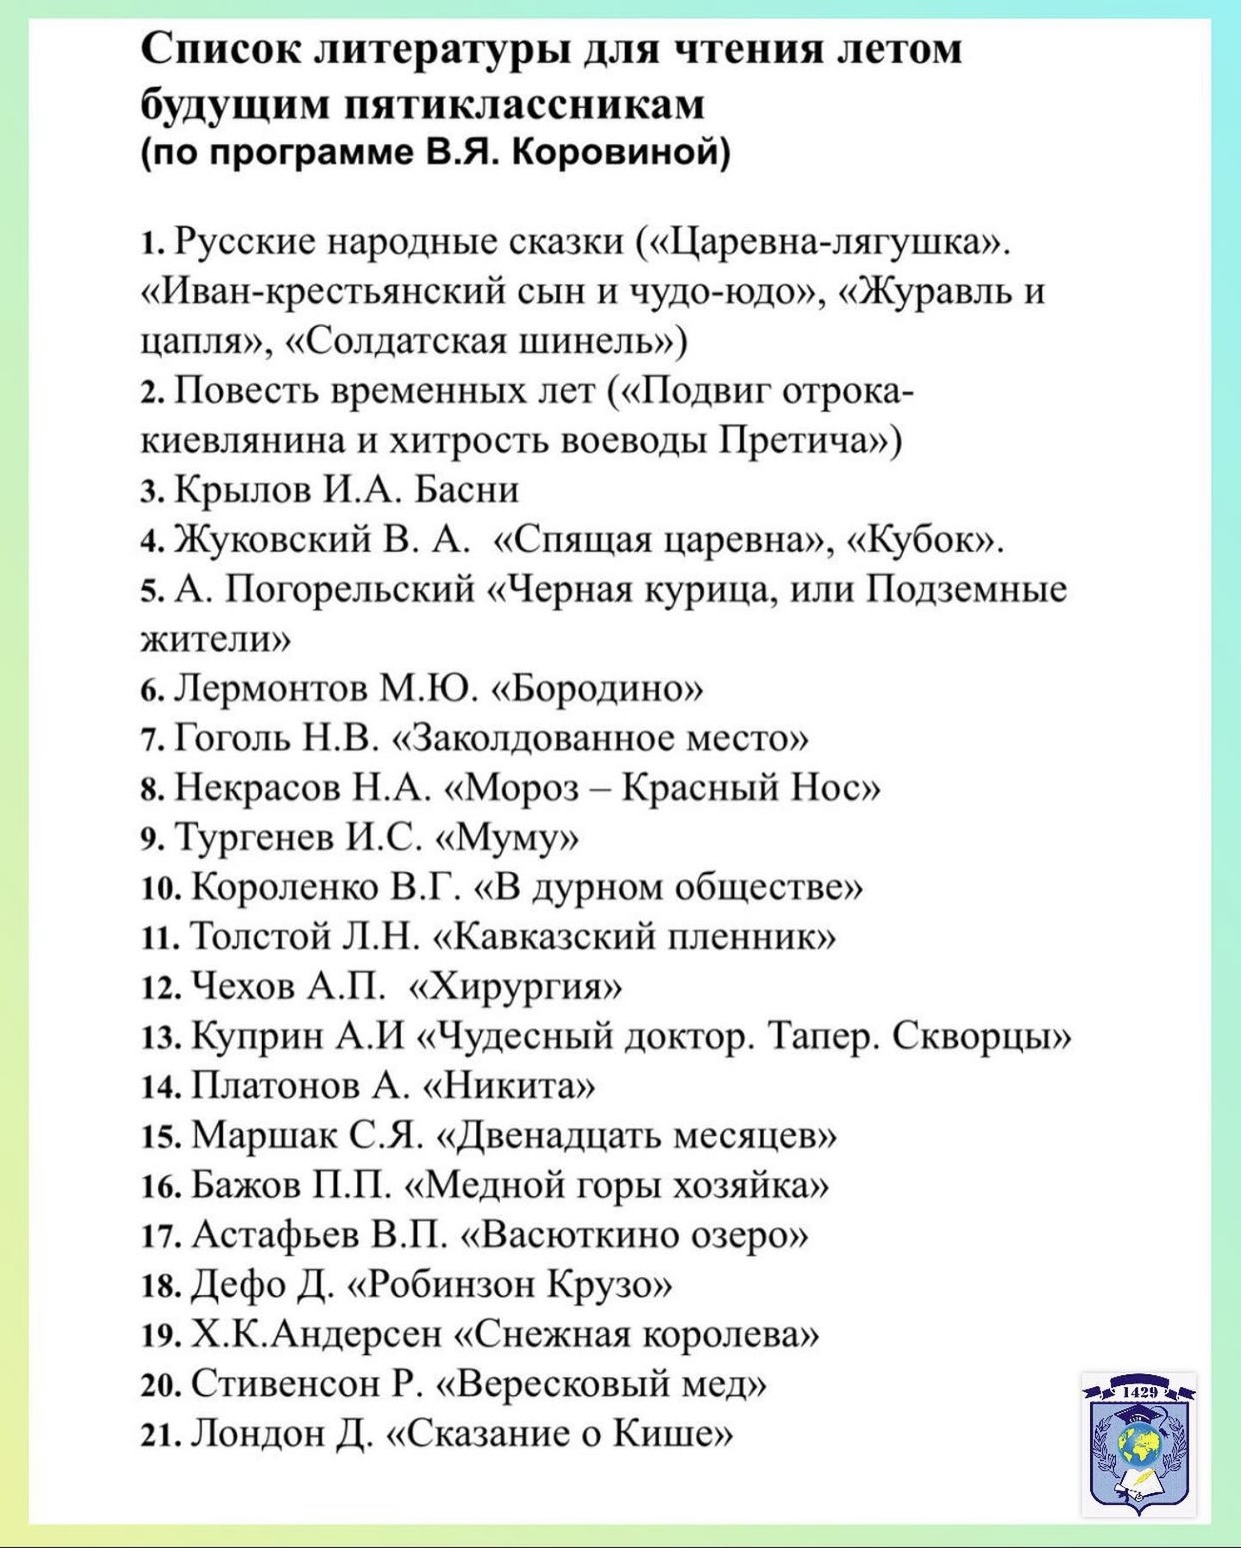 Список литературы для чтения, ГБОУ Школа № 1429, Москва